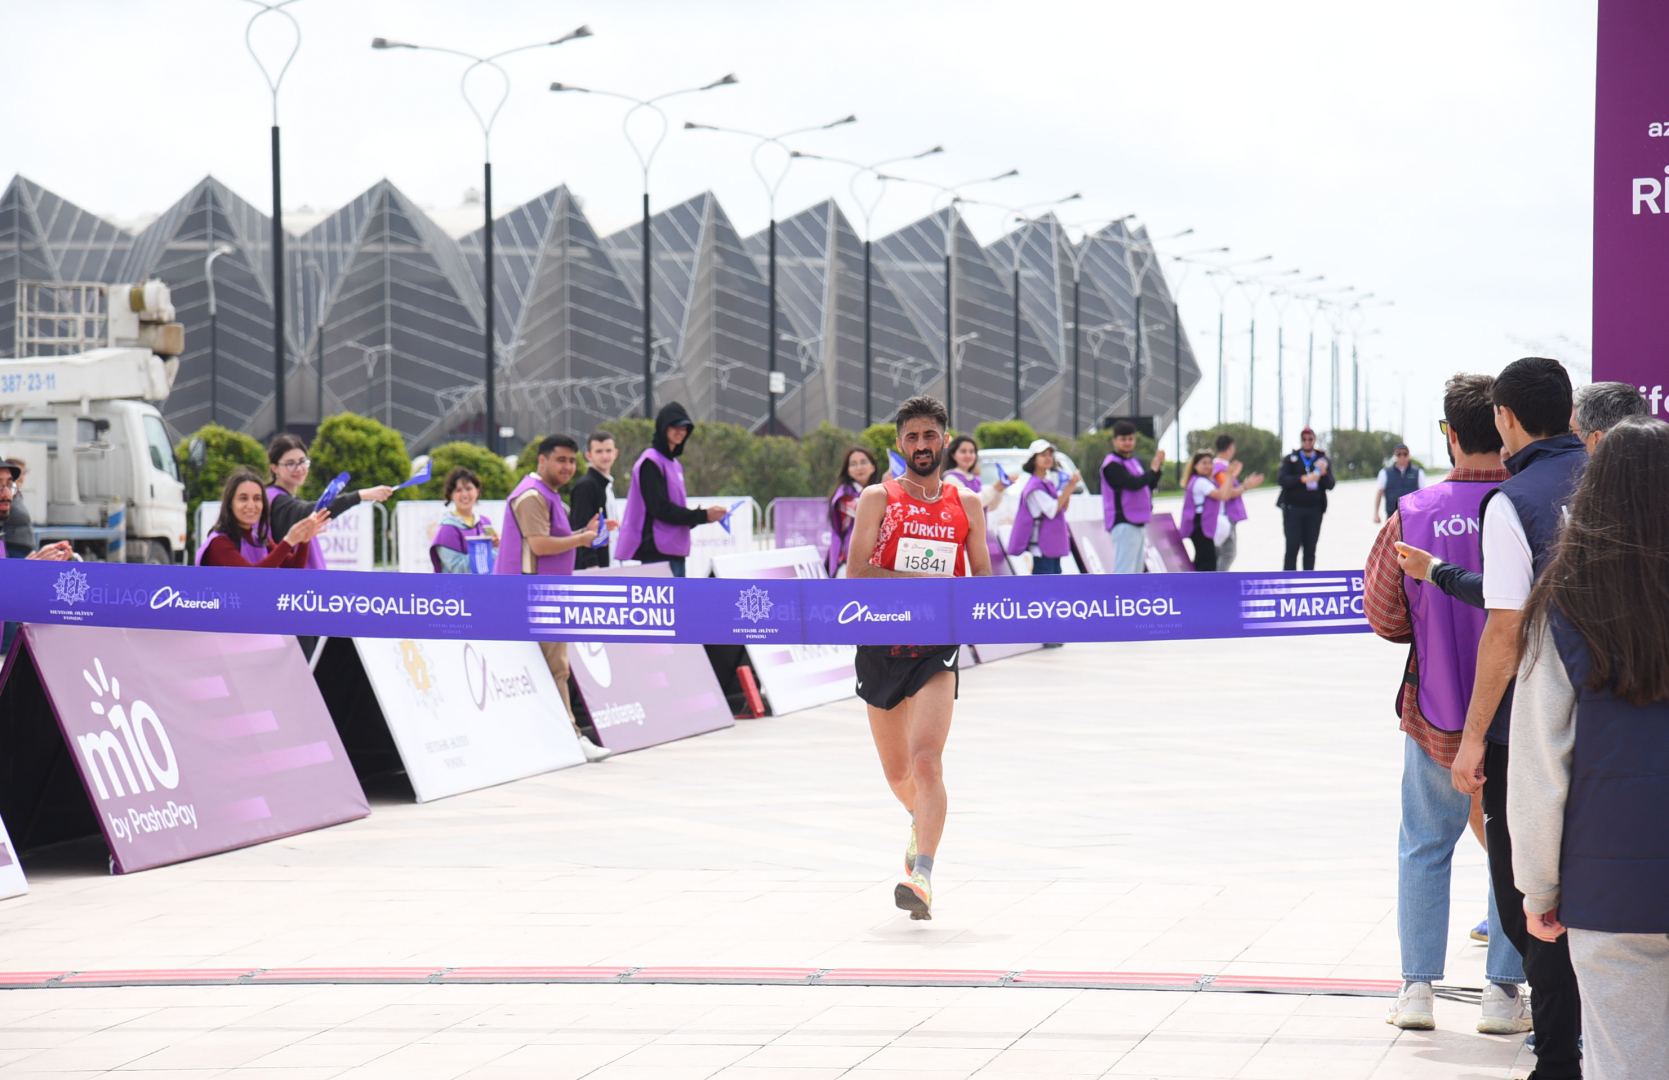 Яркий праздник спорта: Марафон «Победи ветер» в Баку (ФОТО)